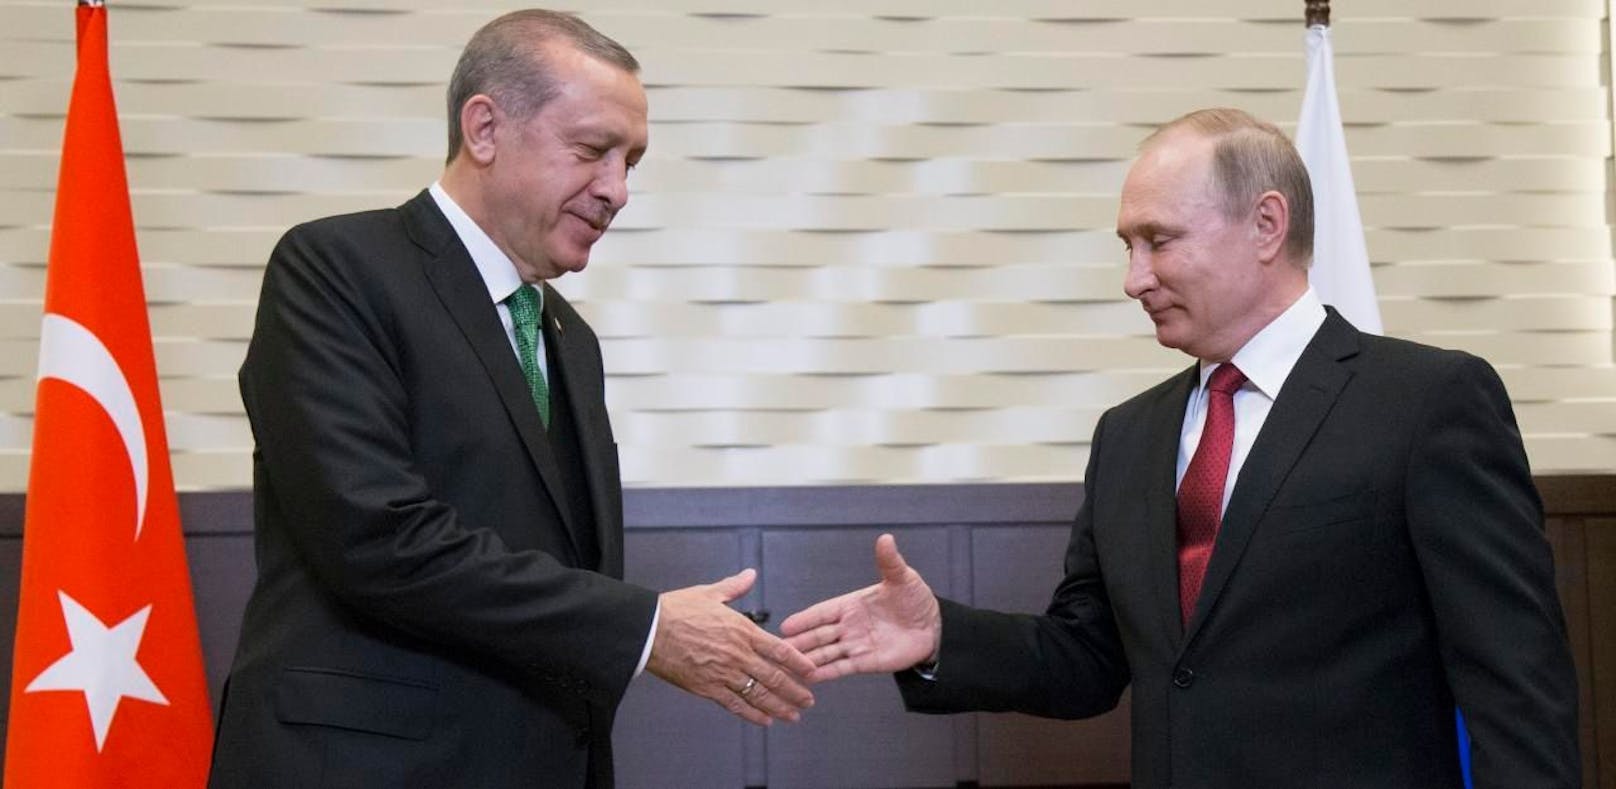 Putin gehen die Waffen aus – Erdogan liefert?